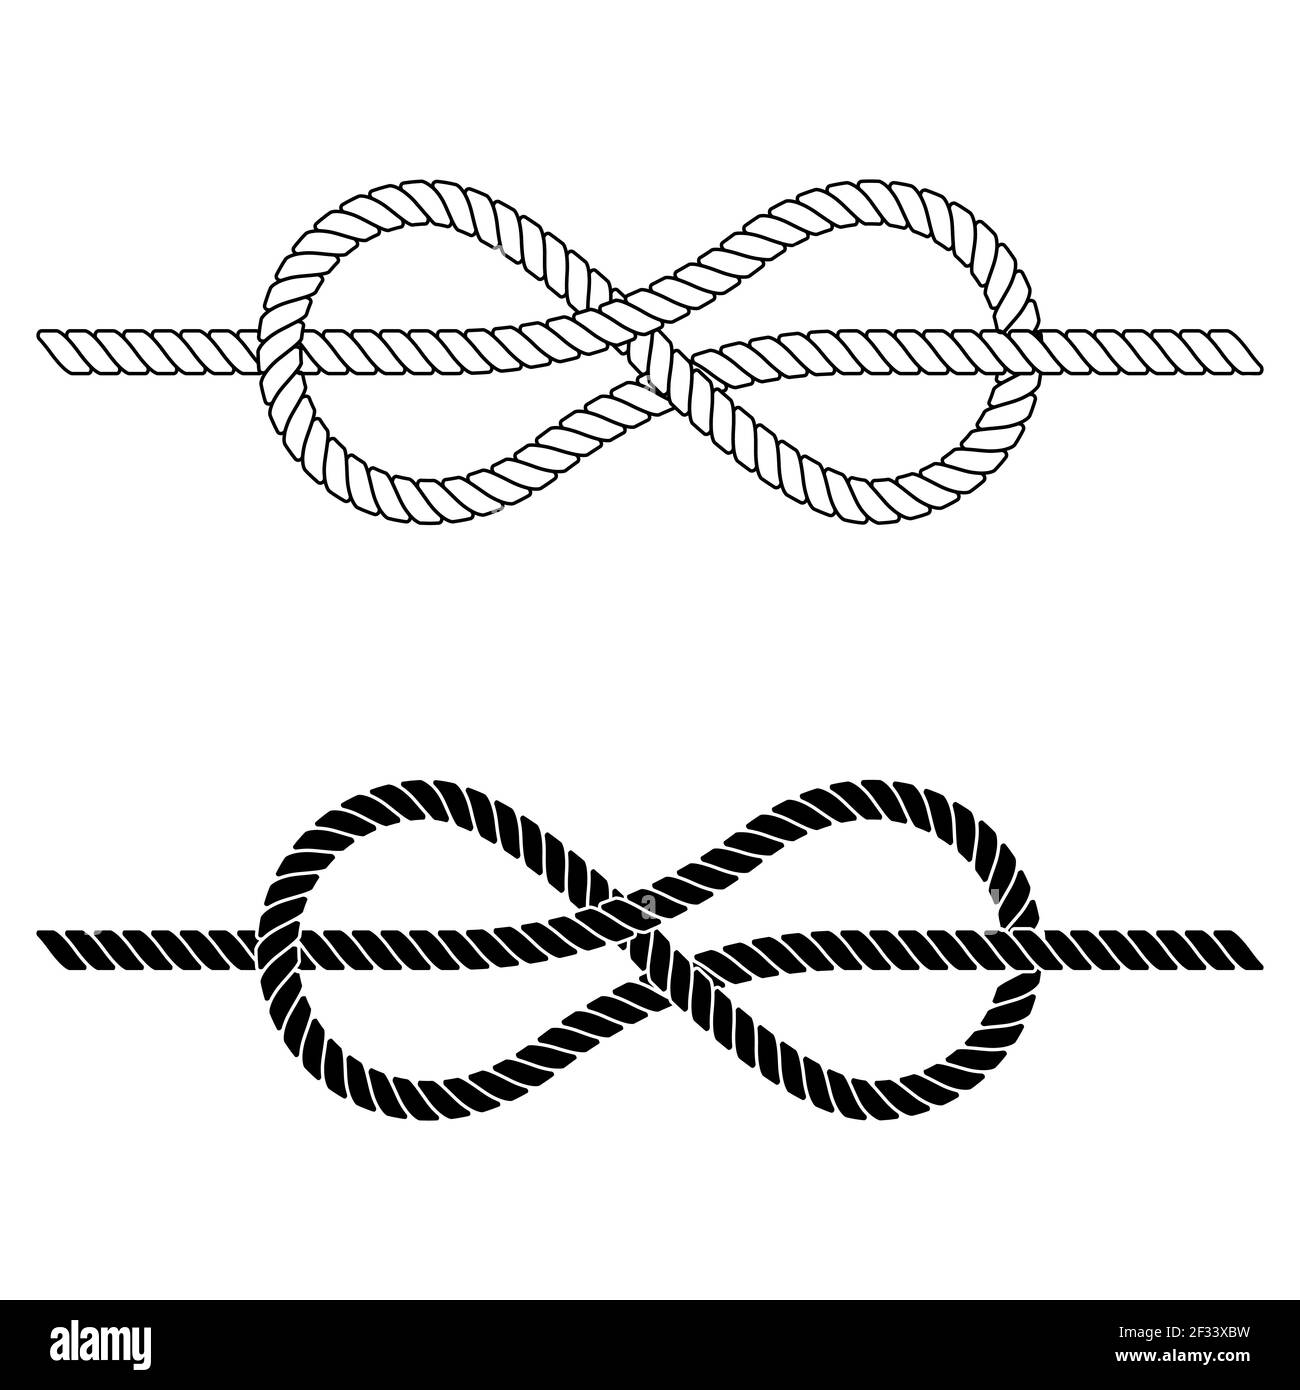 la corde tressée est attachée dans un nœud de mer, le nœud de corde vectoriel en dentelle est un symbole de cohésion, de liens étroits travail d'équipe Illustration de Vecteur